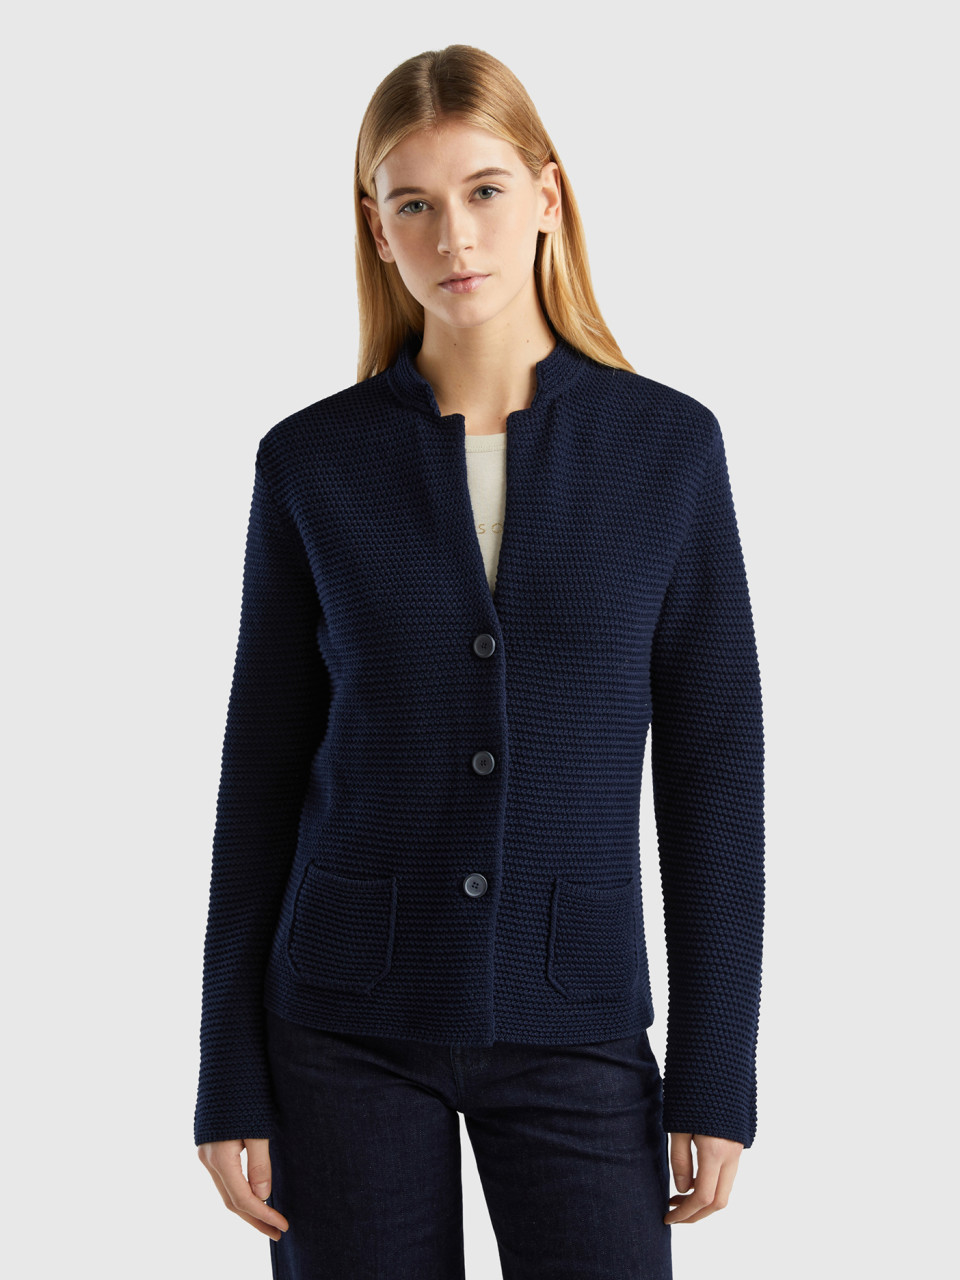 Benetton Online exclusive, 100% Cotton Knit Jacket, Dark Blue, Women